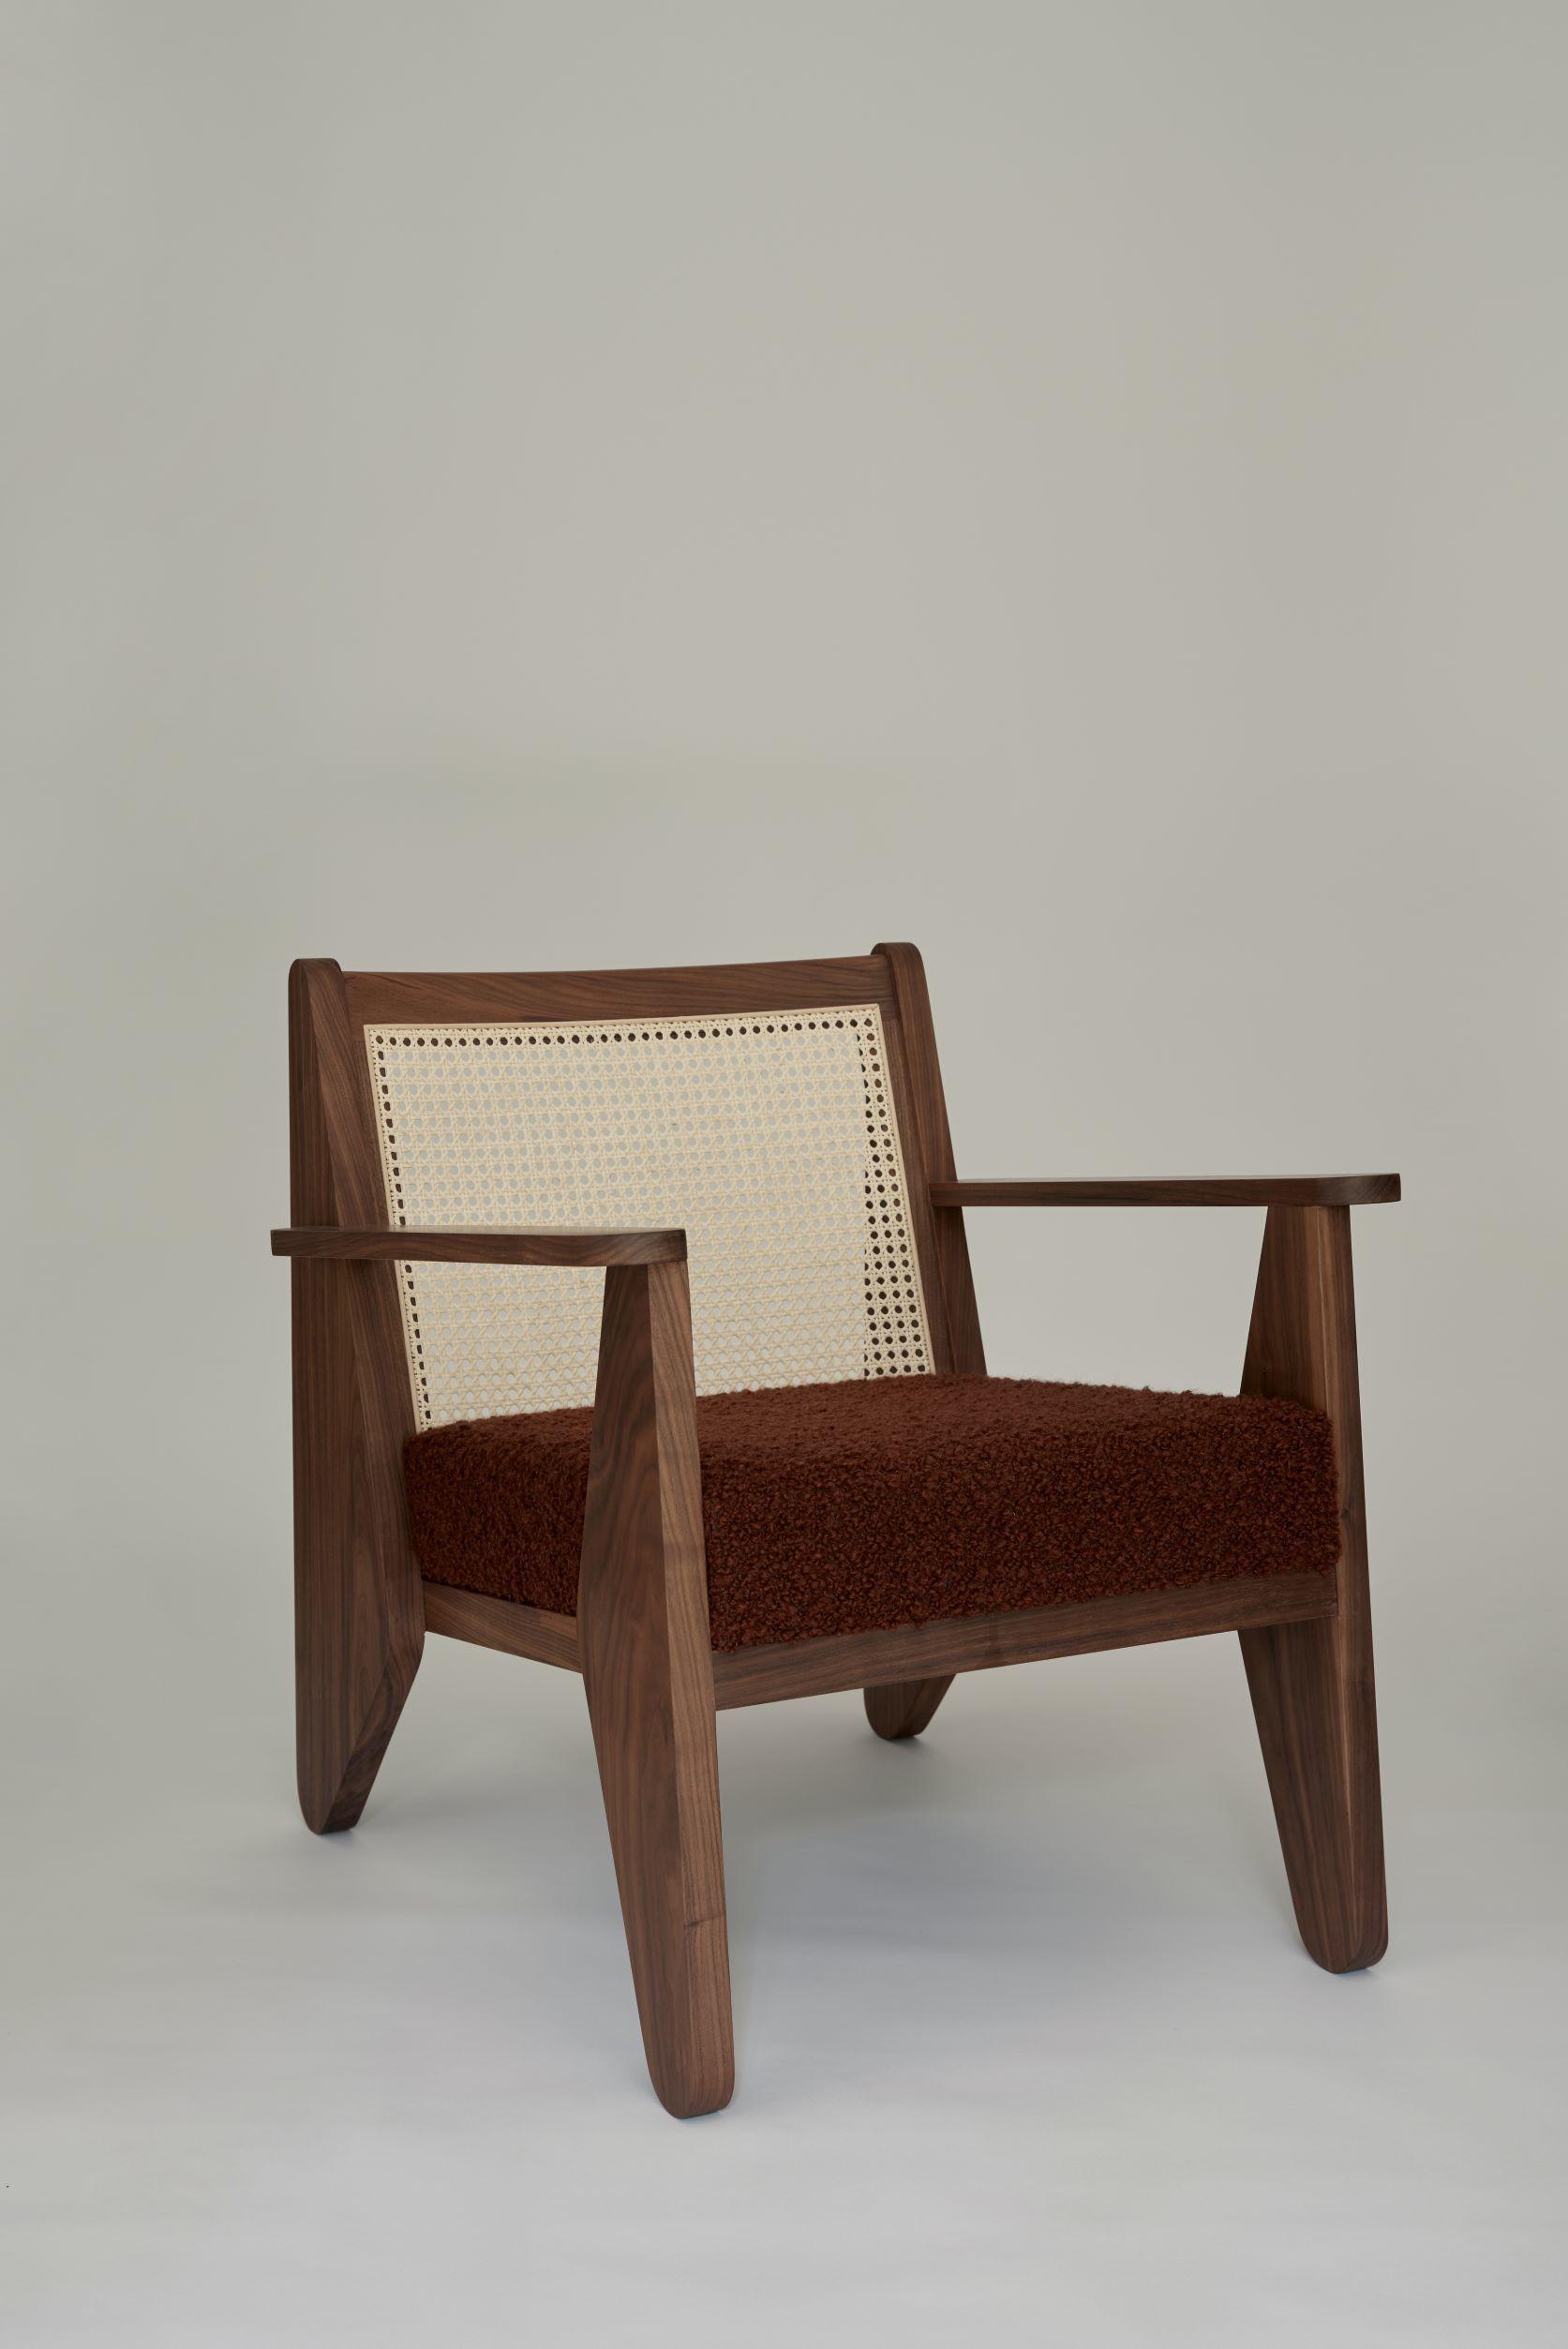 Furniture by Daniel Boddam 4